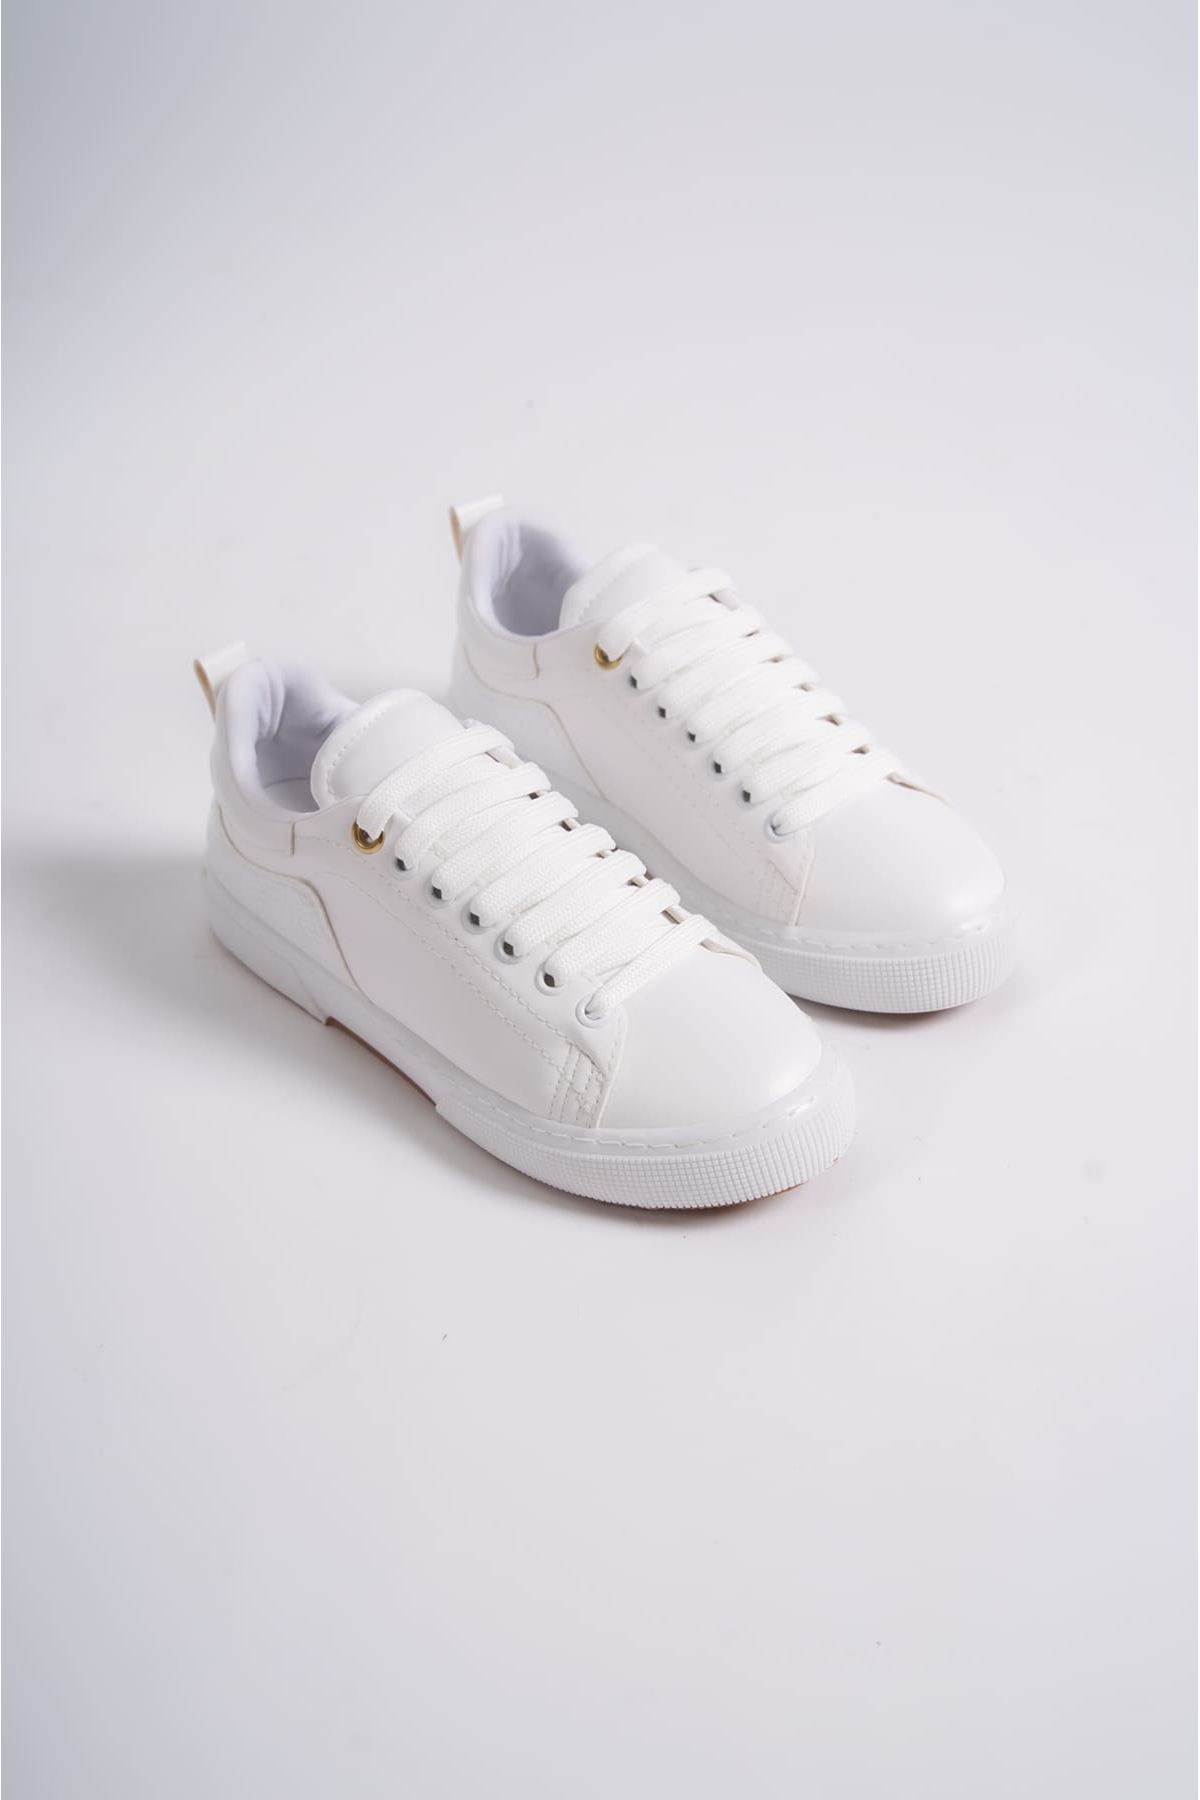 Kadın Günlük Beyaz Spor Ayakkabı PR001Y02B